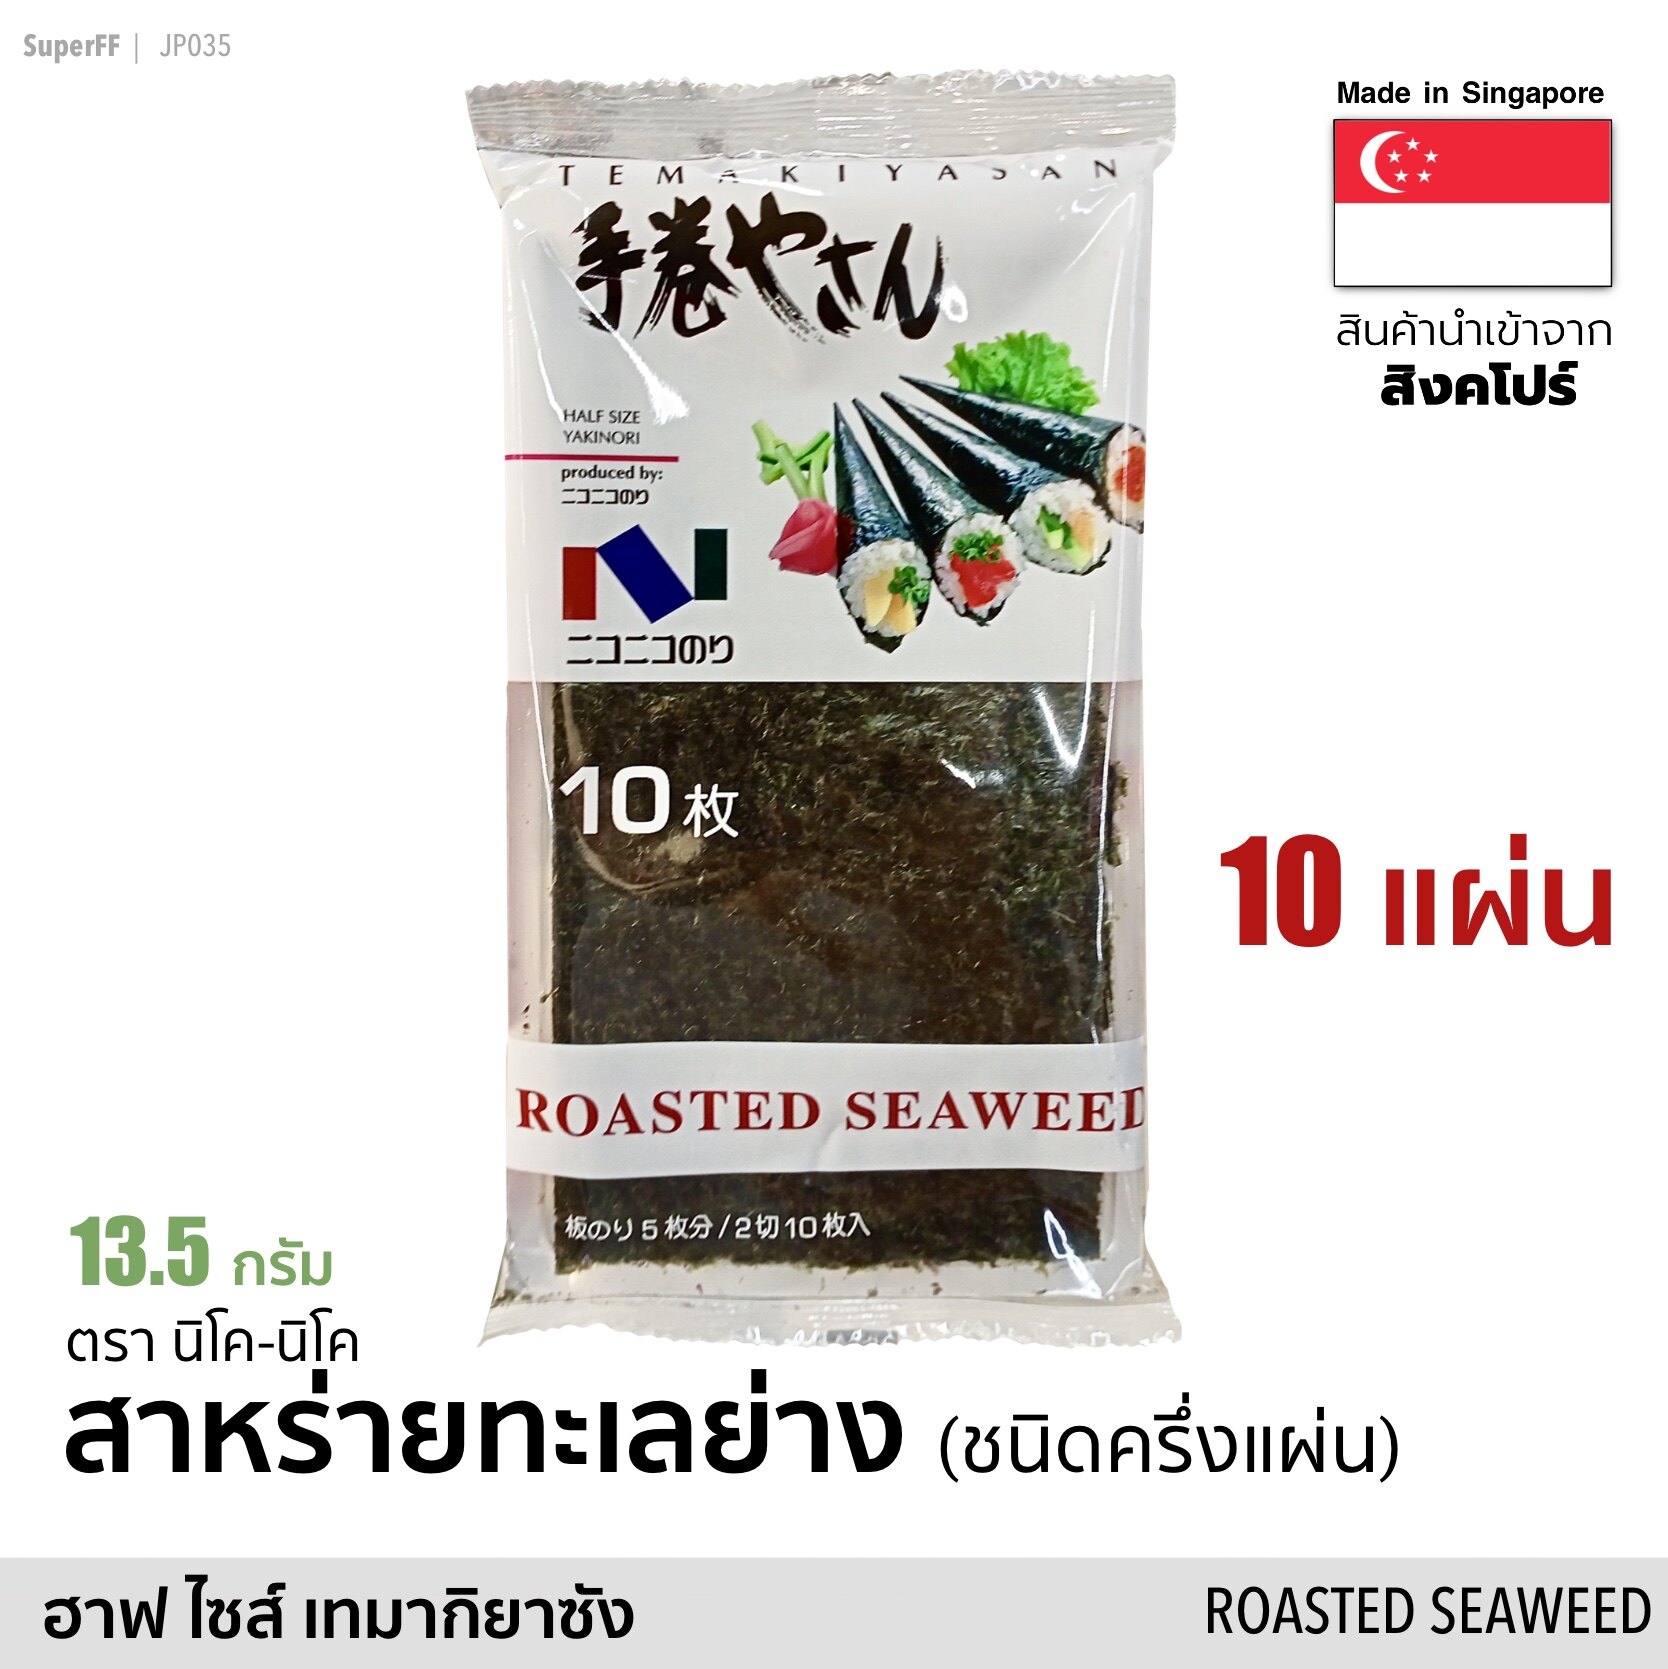 สาหร่ายทะเลย่าง ห่อซูชิ 10 แผ่น (ฮาฟ ไซส์ เทมากิยาซัง) 13.5 กรัม (Exp:2022/01/26)  Roasted Seaweed Half Size (Nico-Nico Brand) อาหารแห้ง อบแห้ง สาหร่ายแผ่นญี่ปุ่น